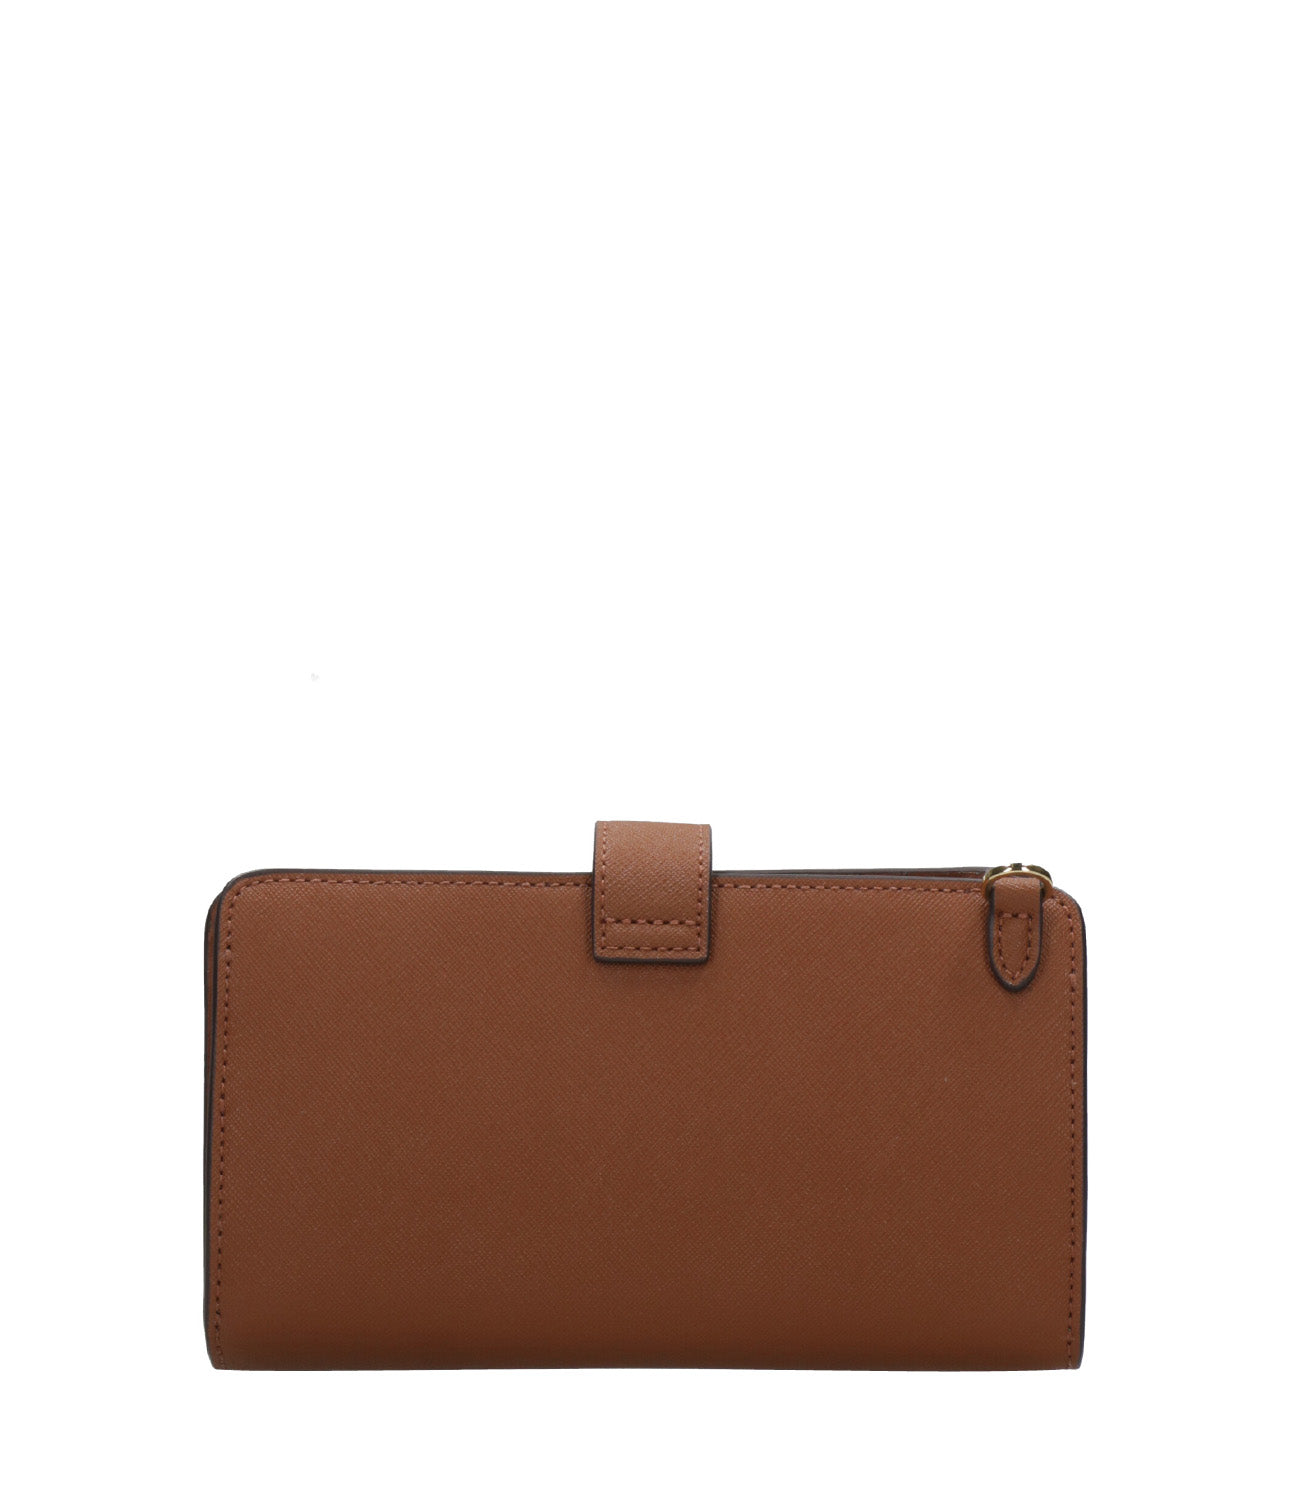 Lauren Ralph Lauren | Leather Clutch Bag